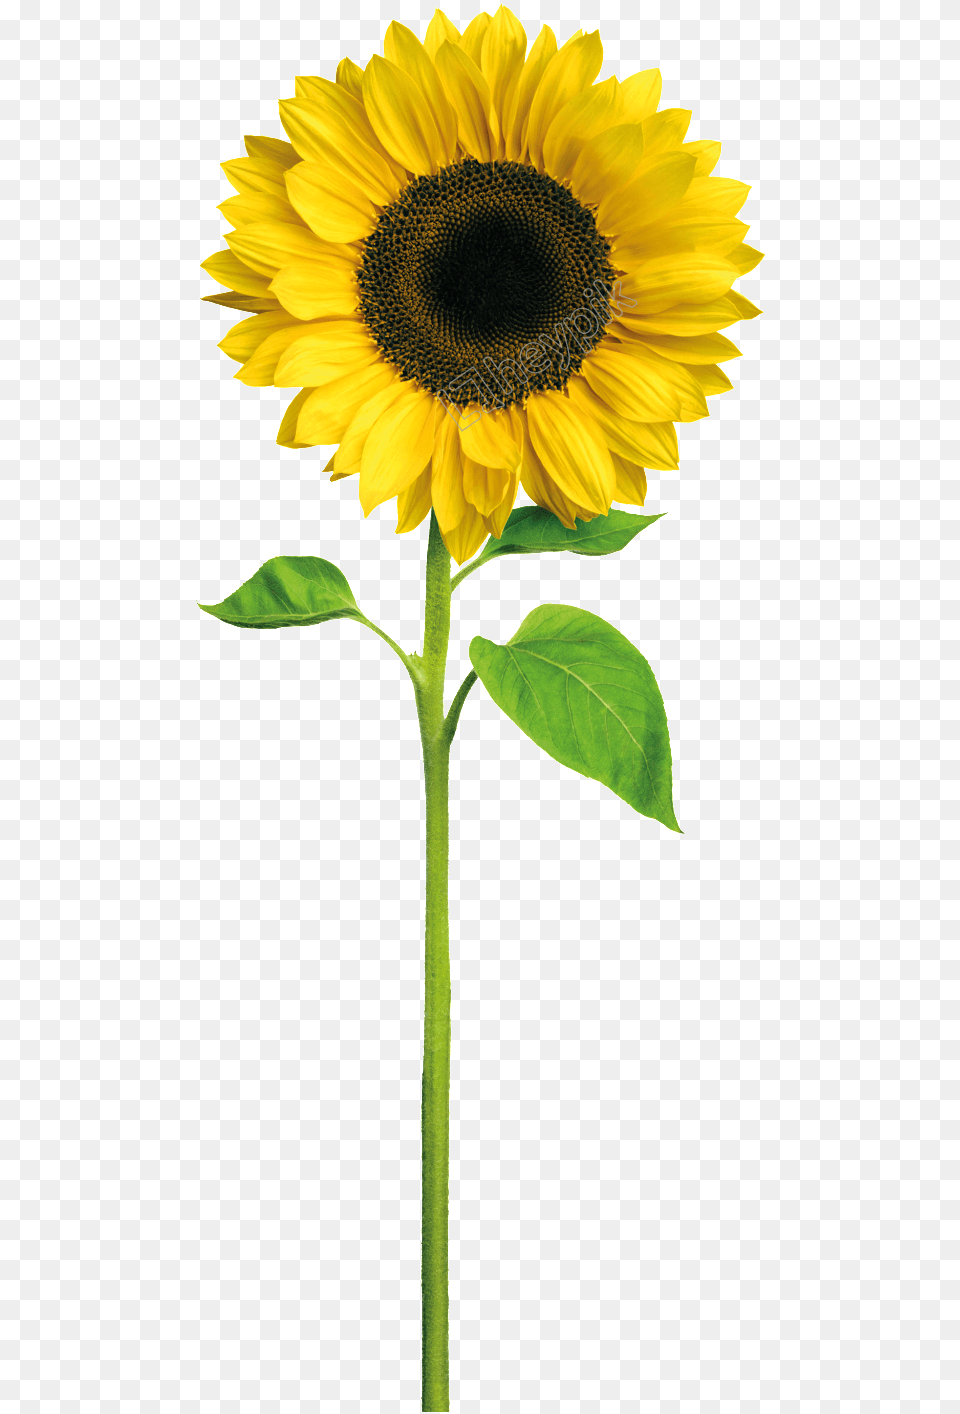 Image Result For Cartoon Sunflower De Um Girassol, Flower, Plant Free Png